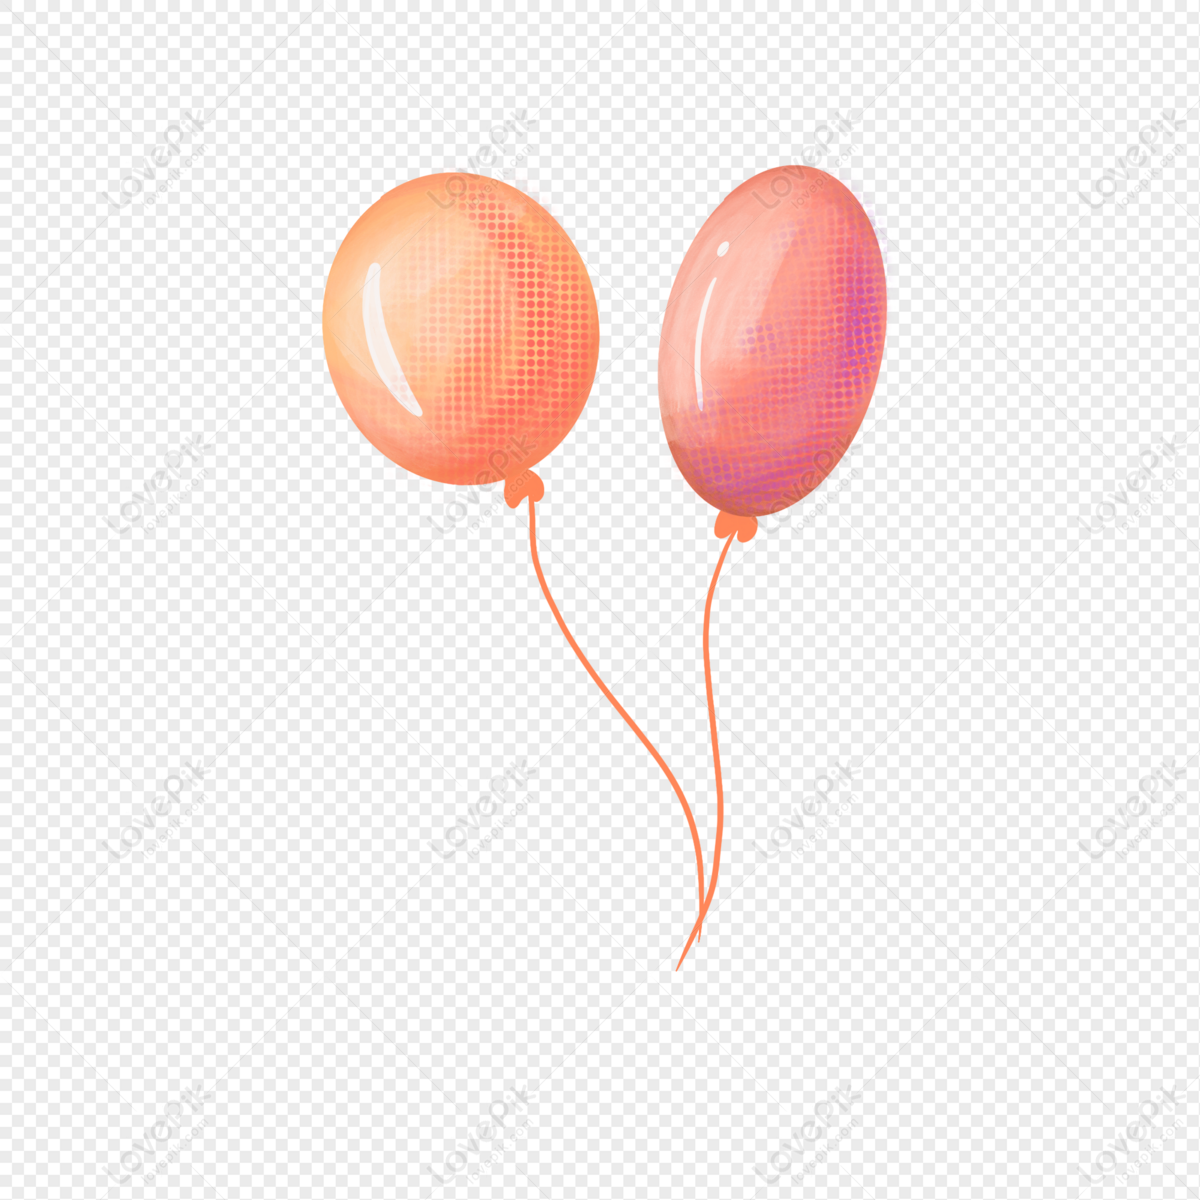 Ballons Colorés PNG , Des Ballons, Ballon Coloré, Ballon Clipart Image PNG  pour le téléchargement libre